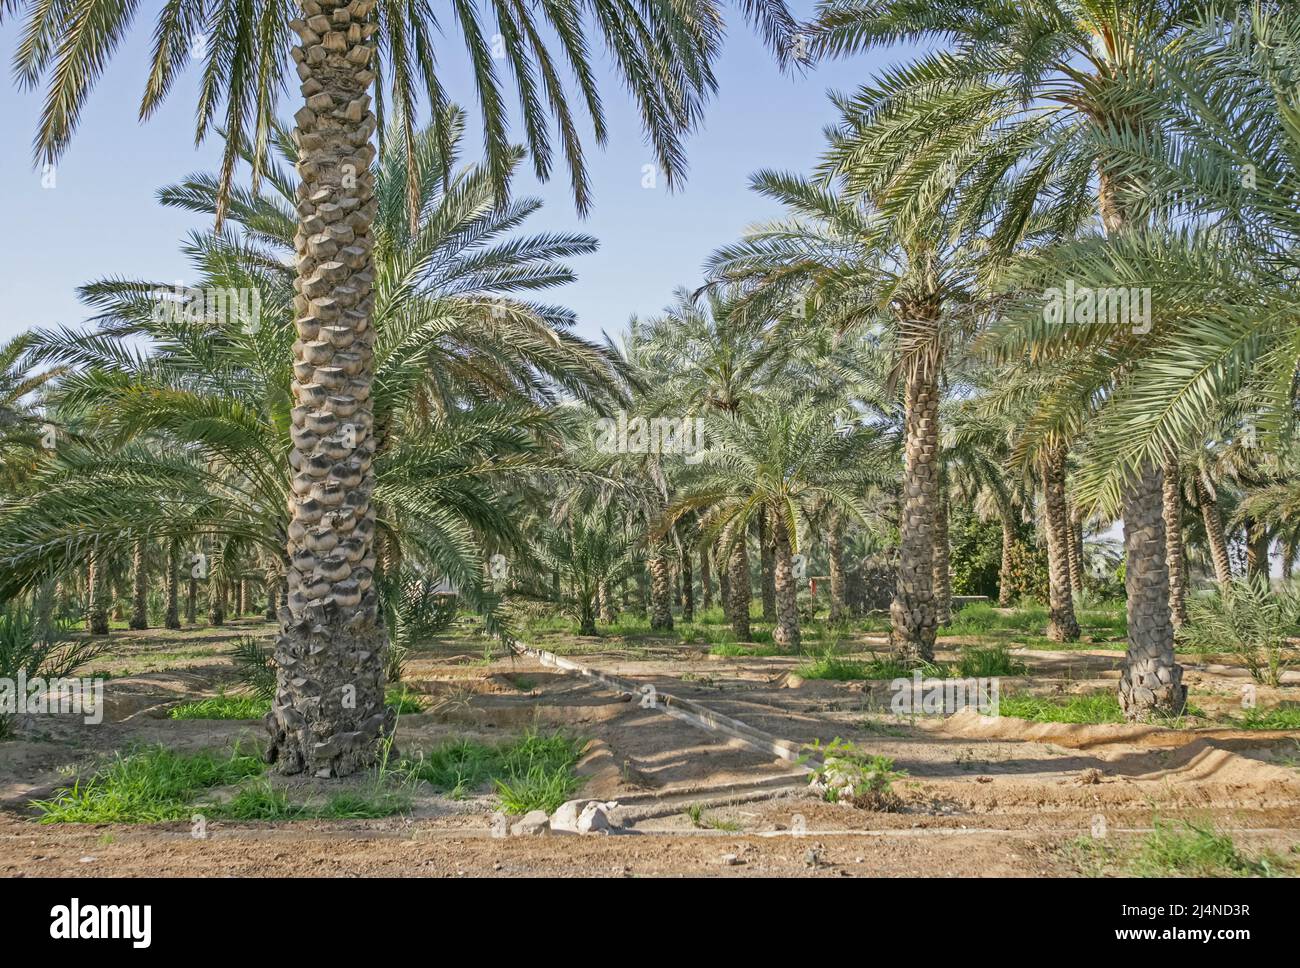 Una piantagione di data con un falaj tradizionale, o canale di irrigazione, a Dhaid nell'Emirato di Sharjah negli Emirati Arabi Uniti. Foto Stock